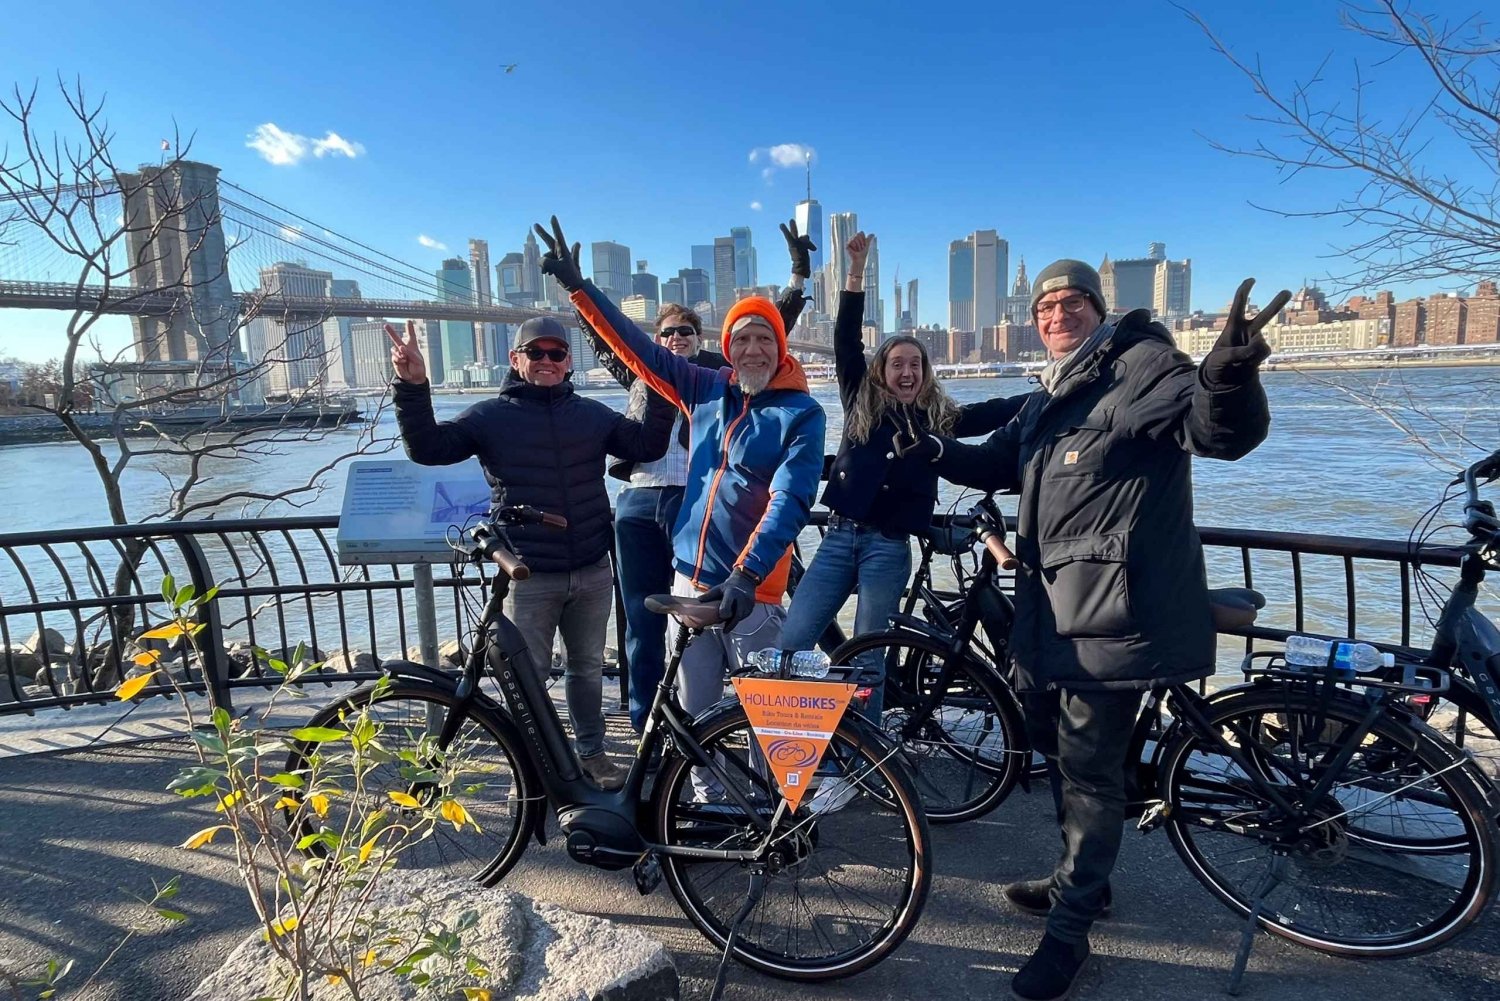 Broadway Fahrradtour mit authentischen holländischen Fahrrädern!